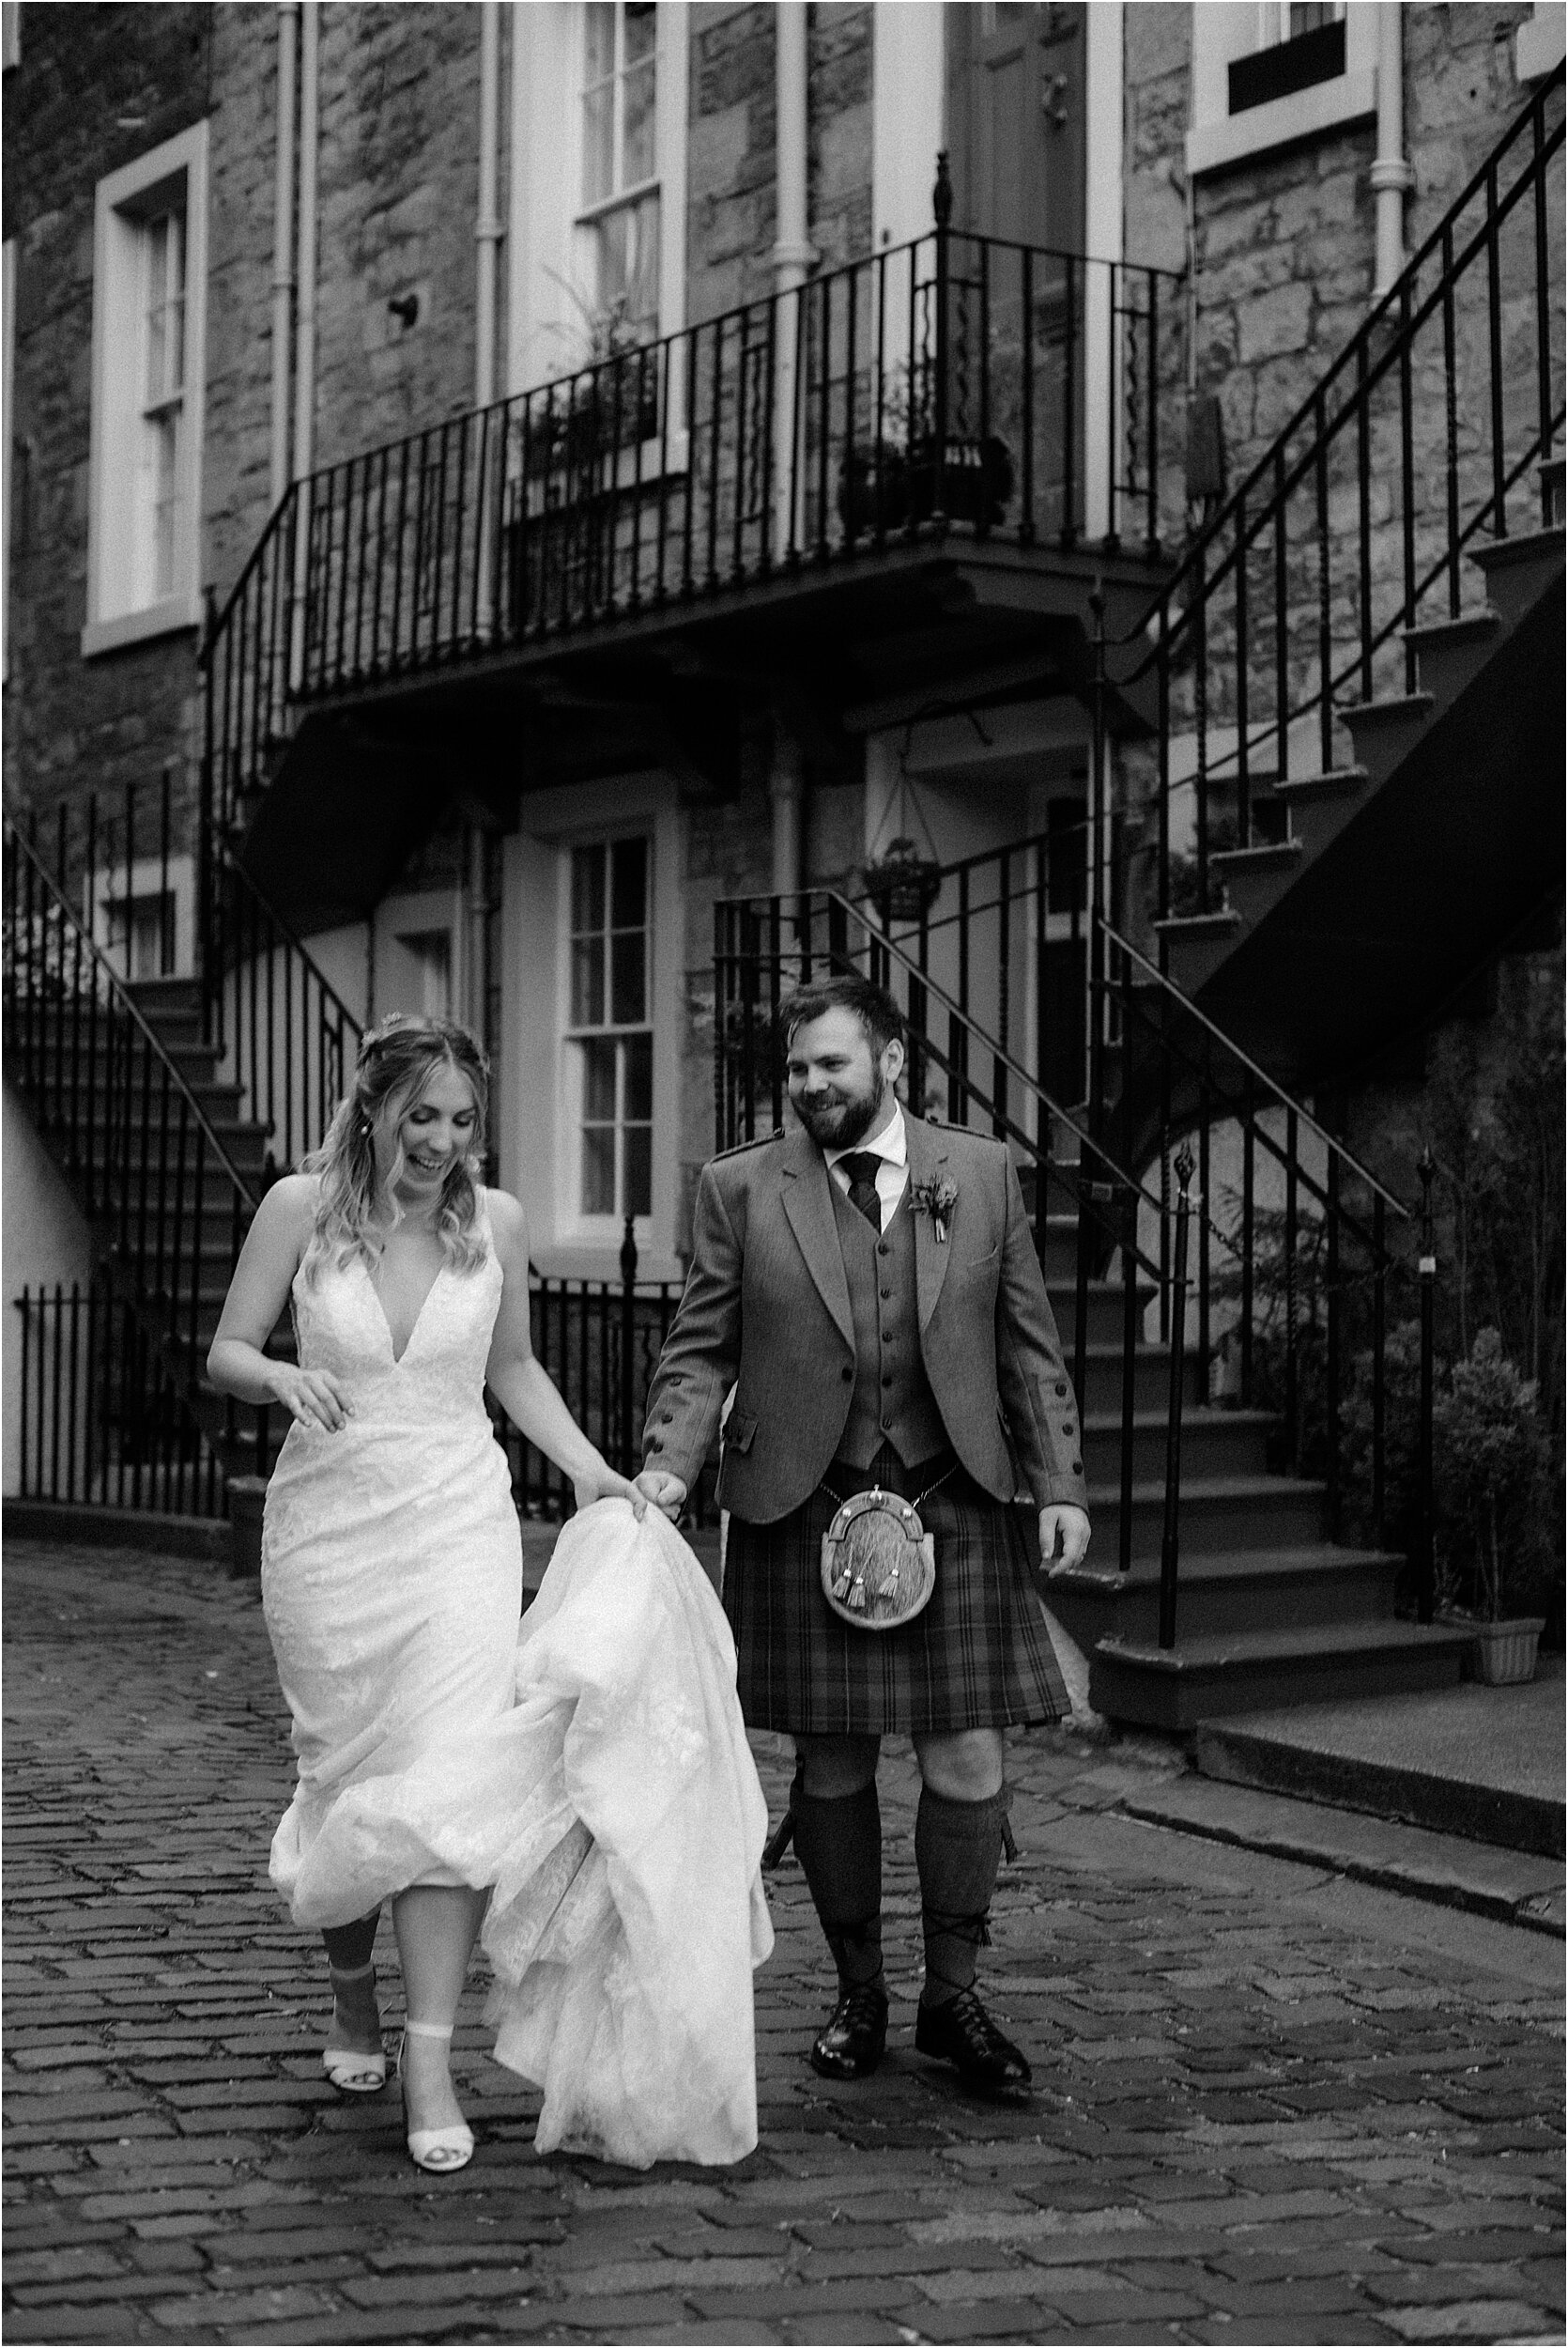 Timberyard-wedding-Edinburgh-78.jpg